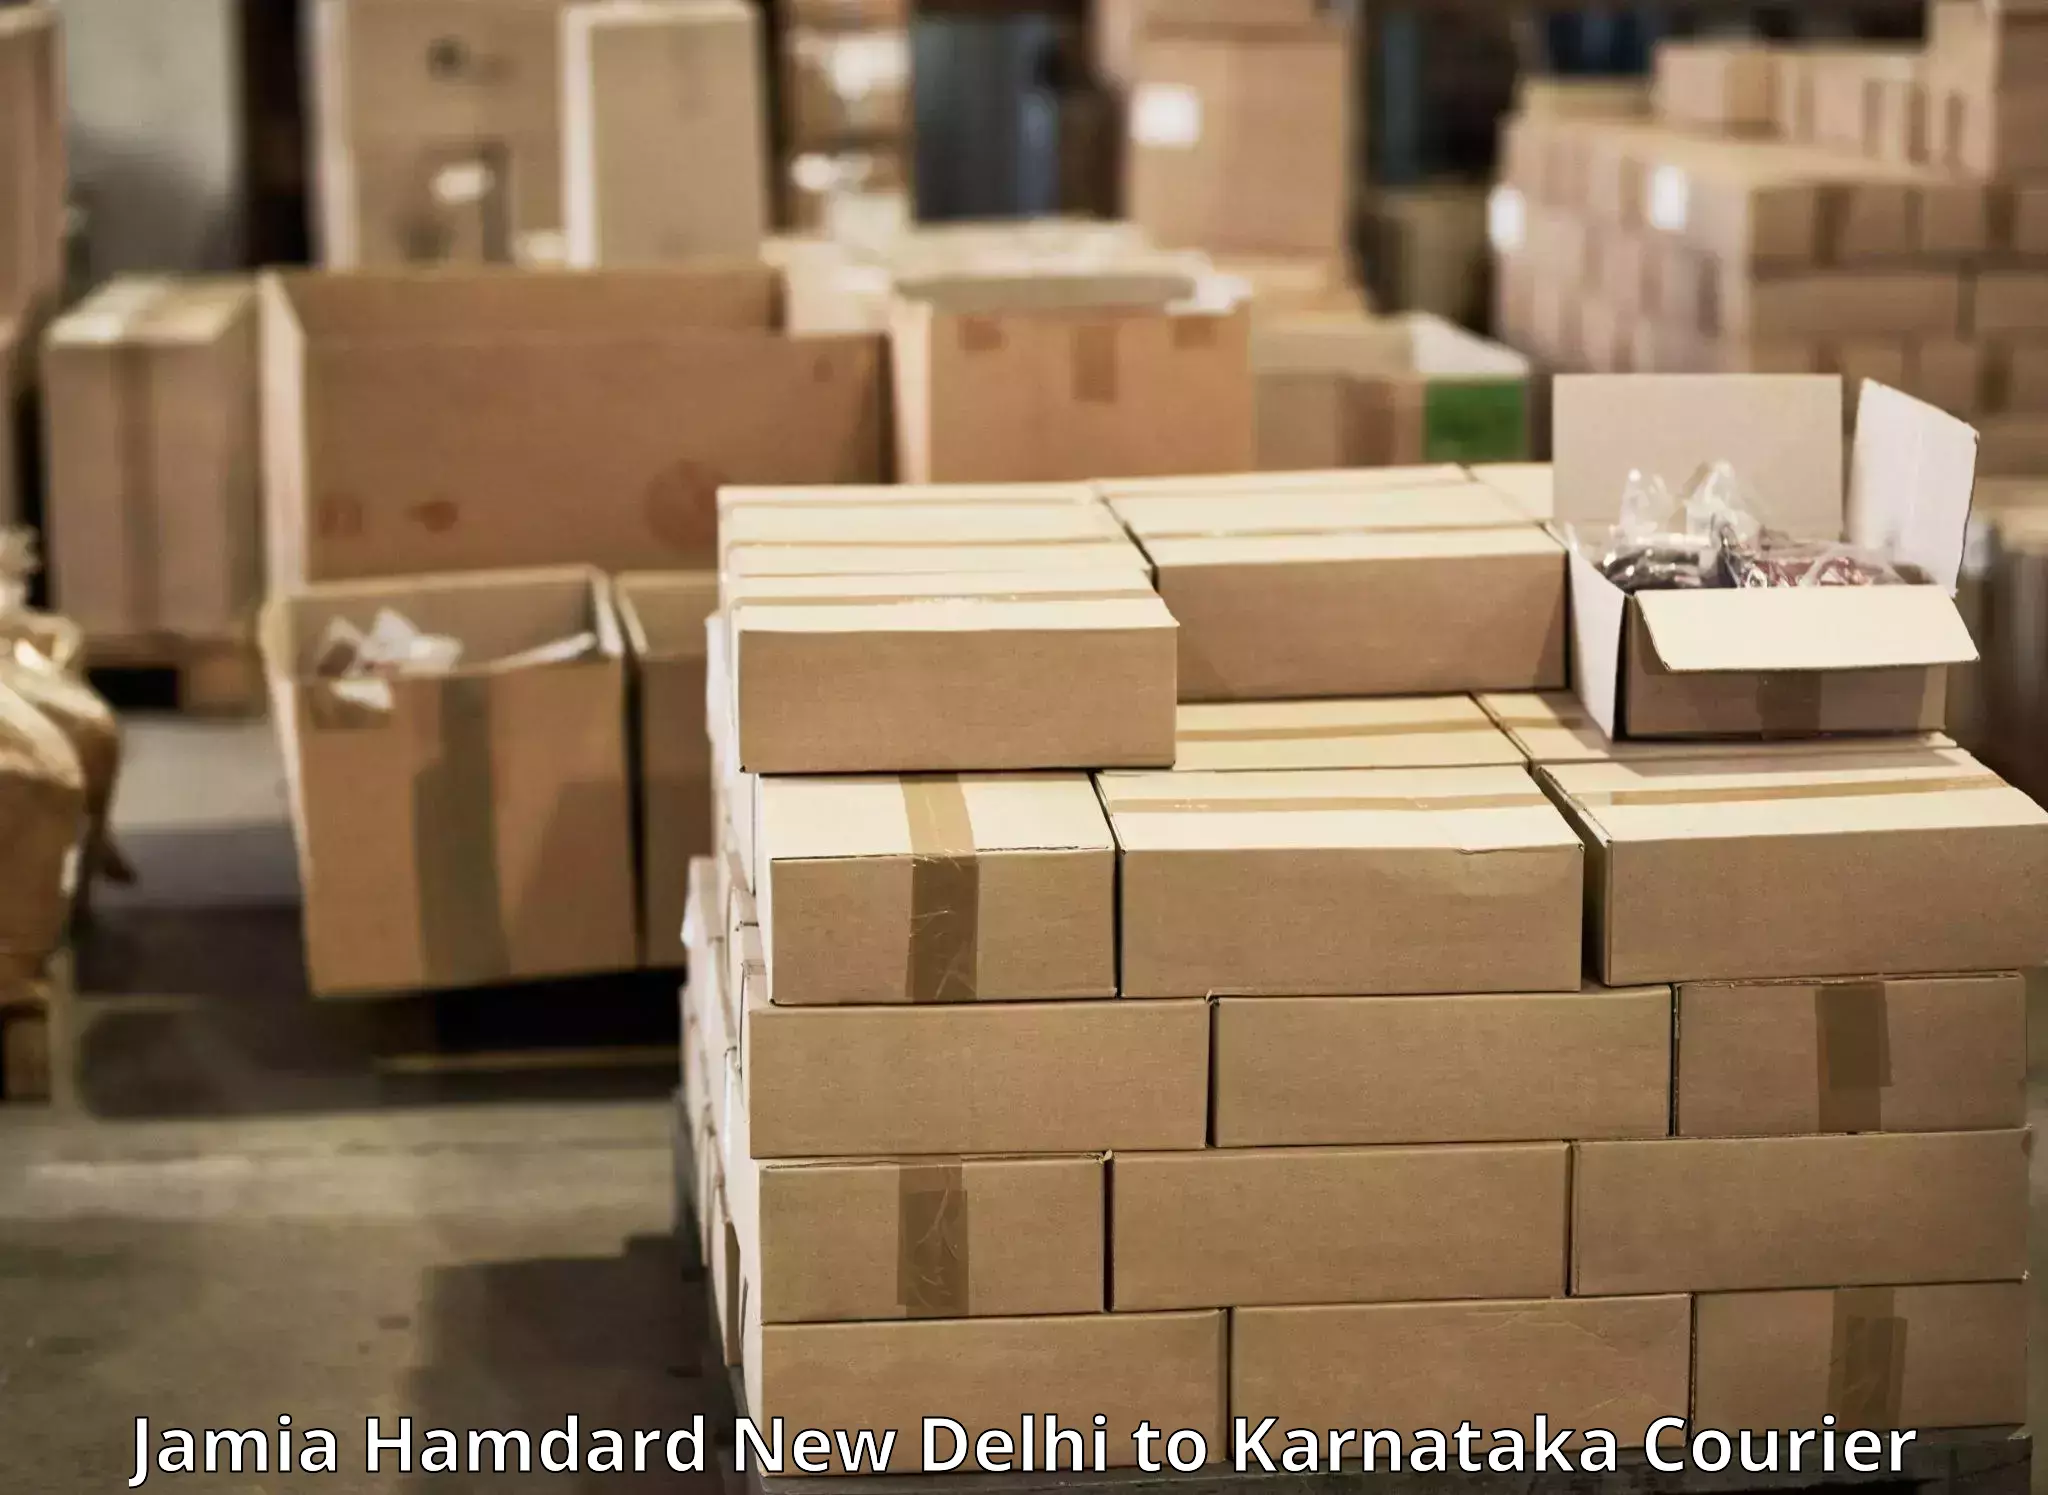 Affordable shipping solutions Jamia Hamdard New Delhi to Karnataka